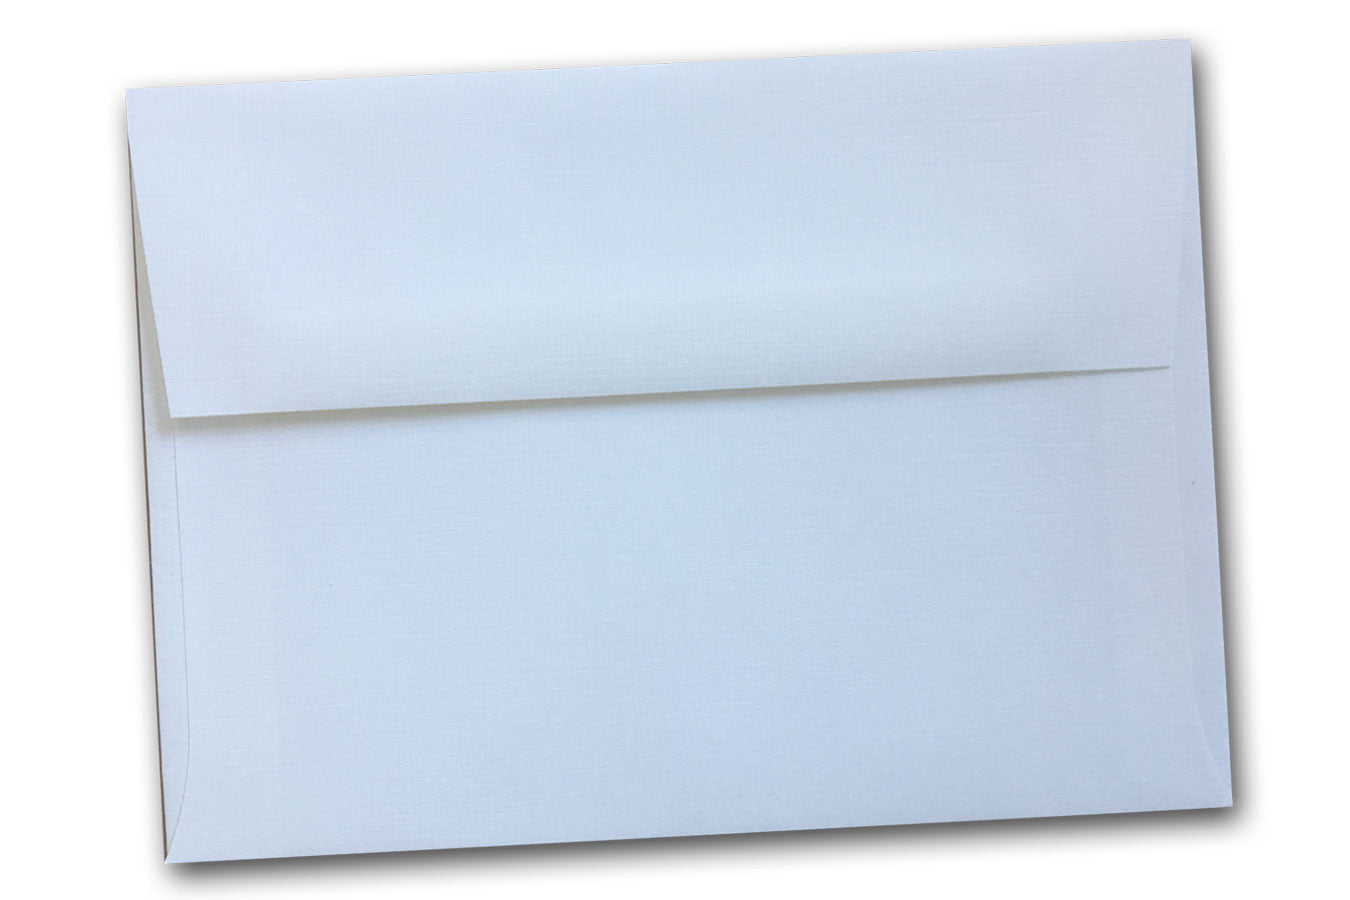 Translucent Vellum envelopes - Brilliant Promos - Be Brilliant!